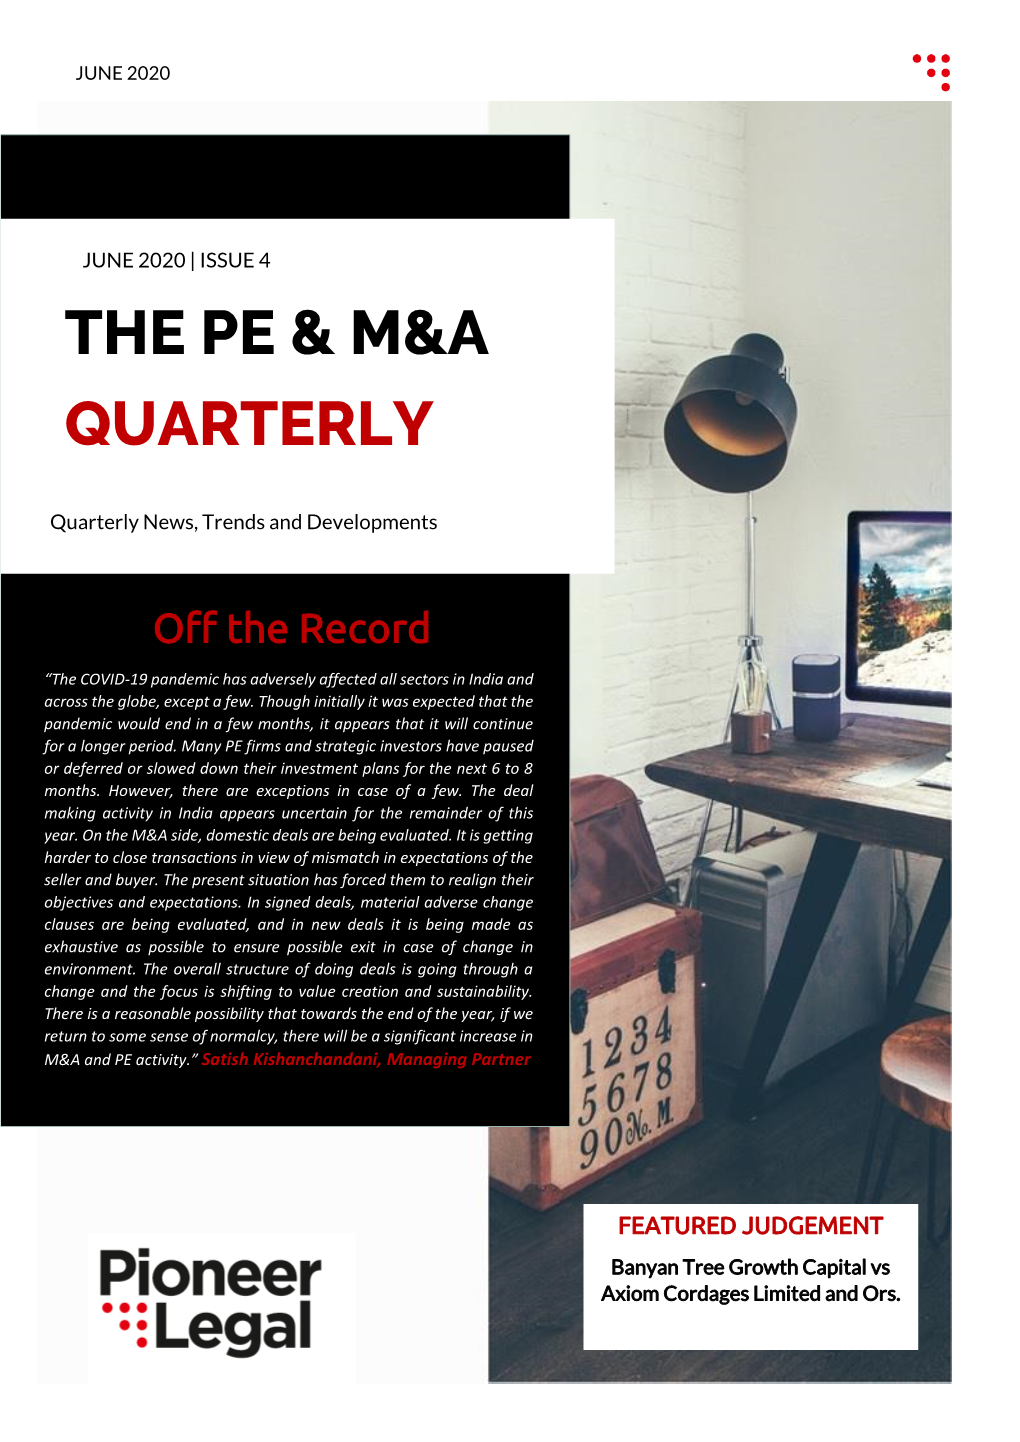 The Pe & M&A Quarterly